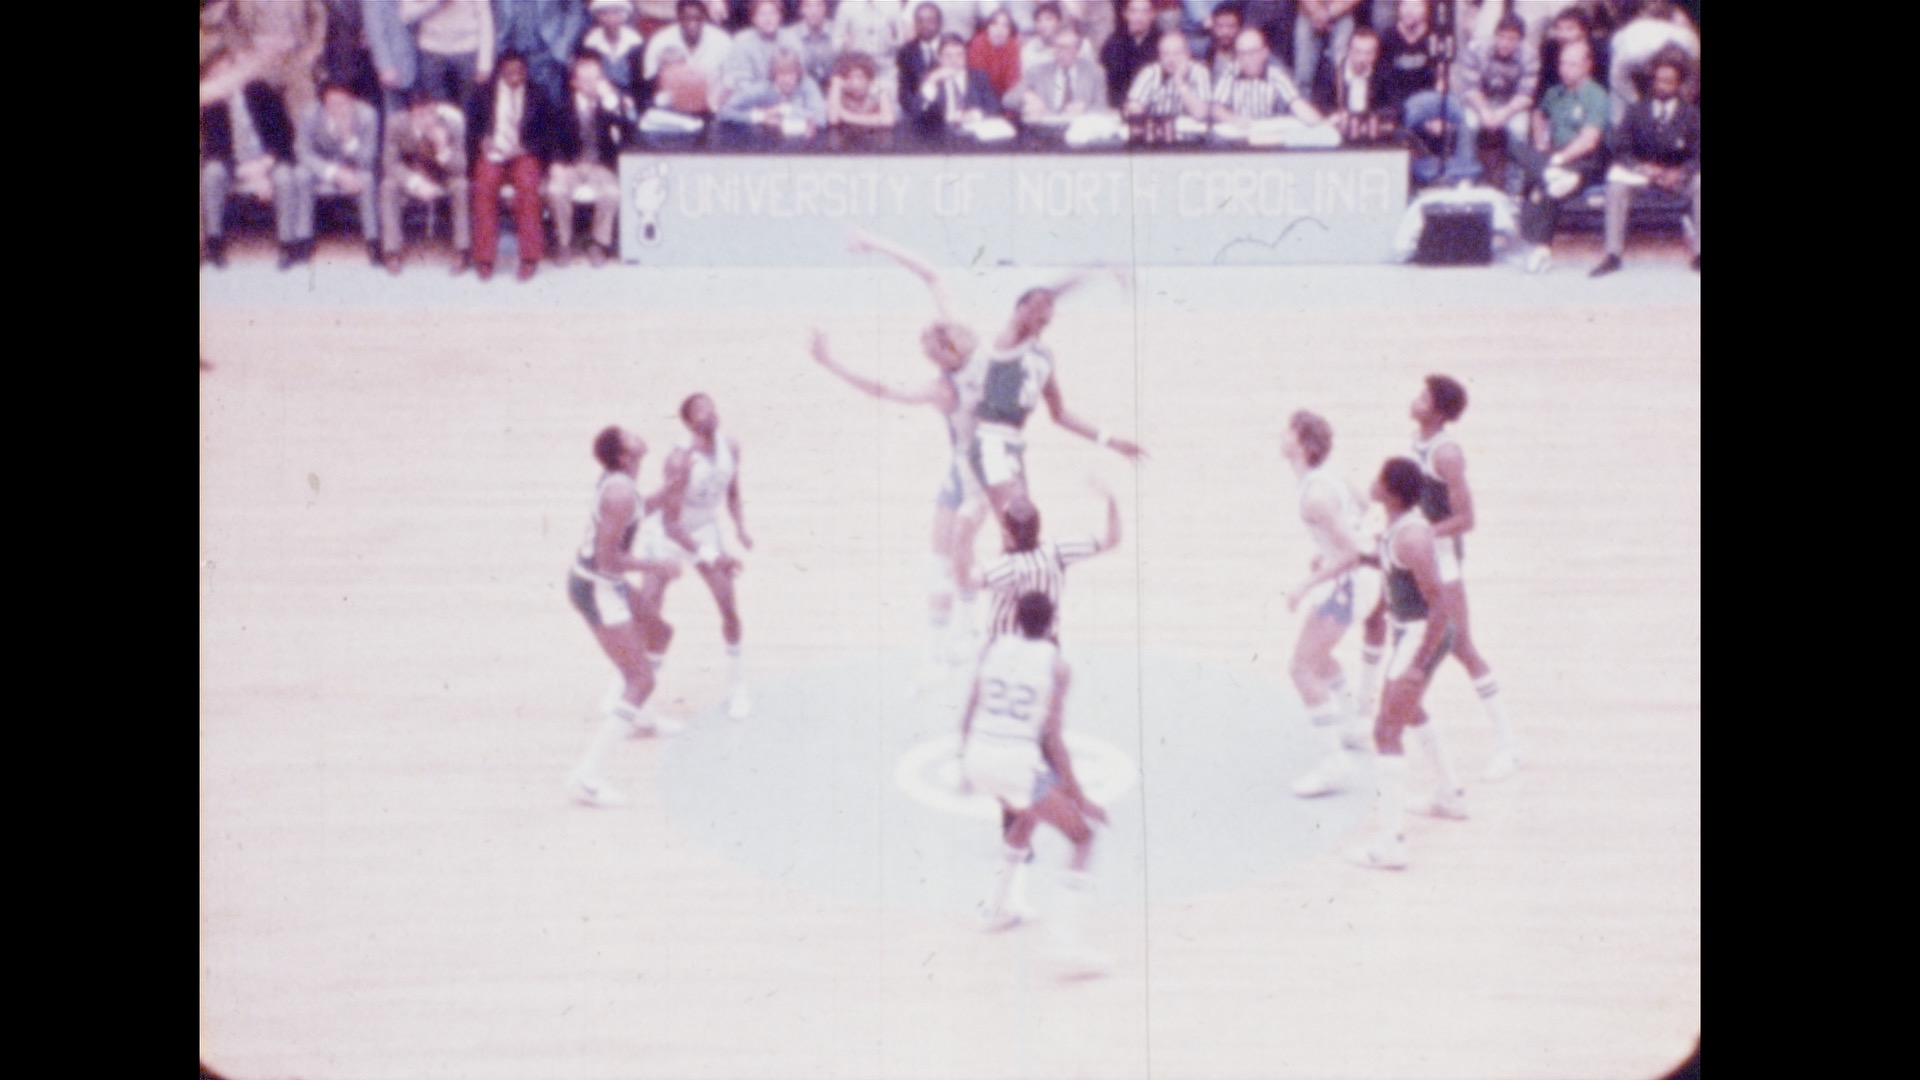 MSU Basketball vs. North Carolina, 1978